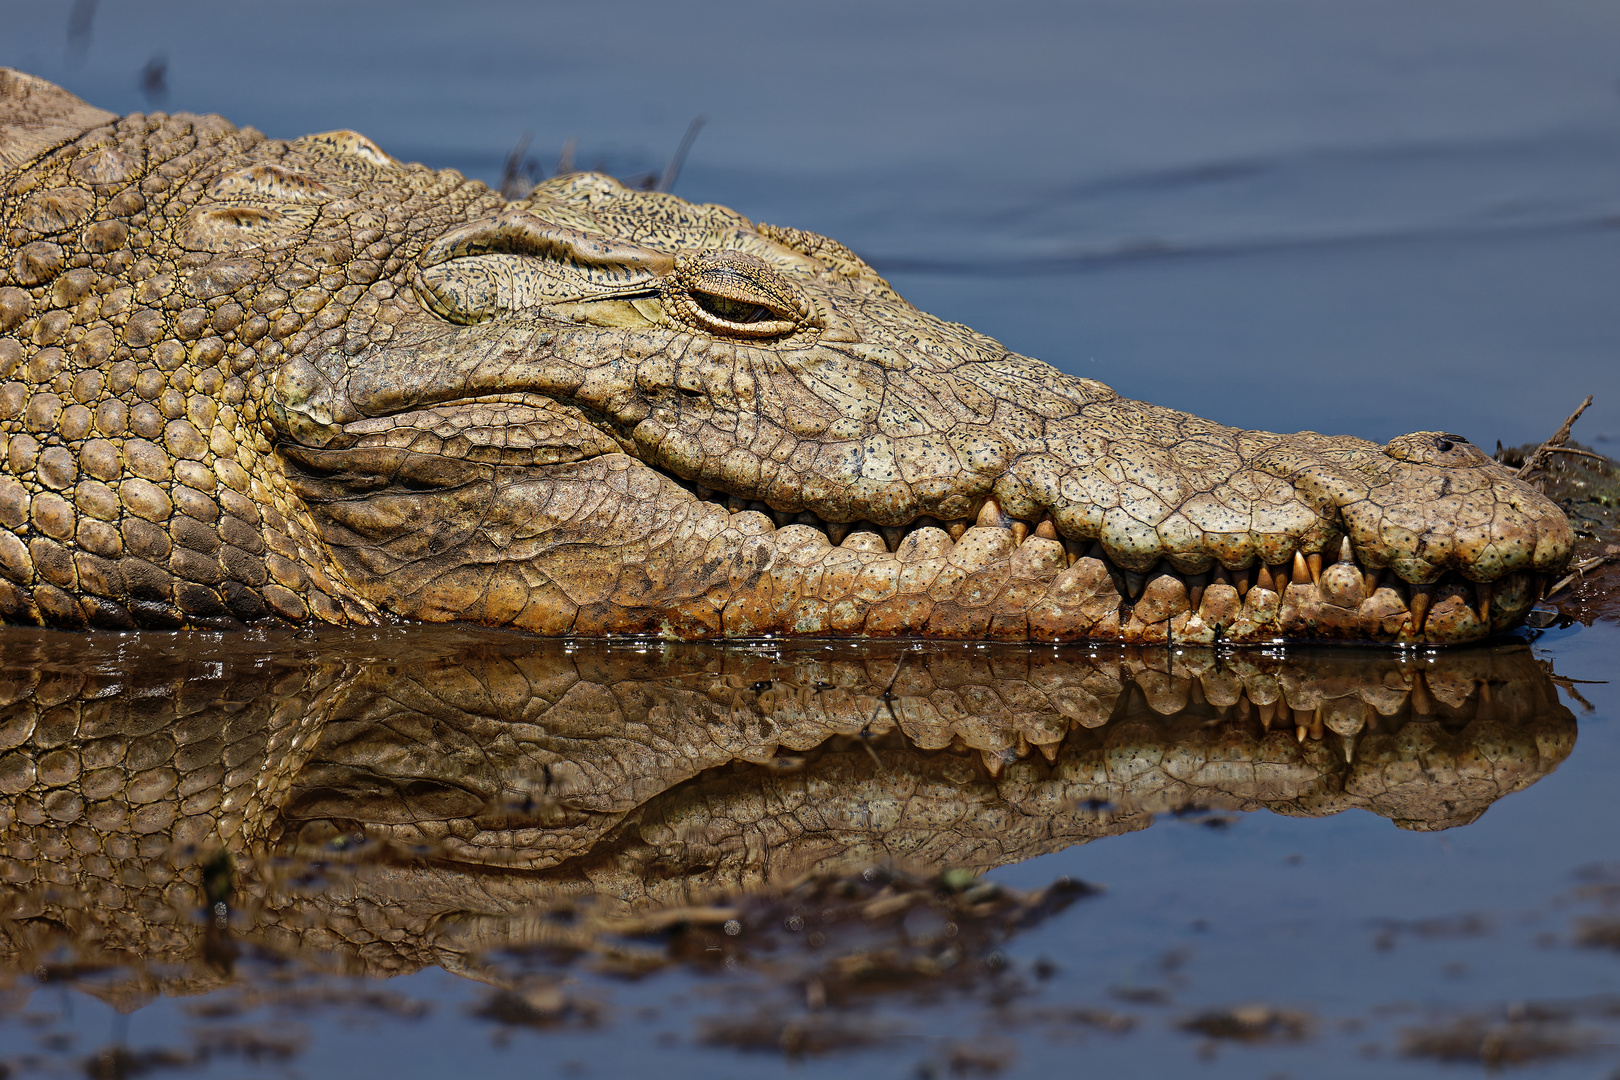 Krokodil 